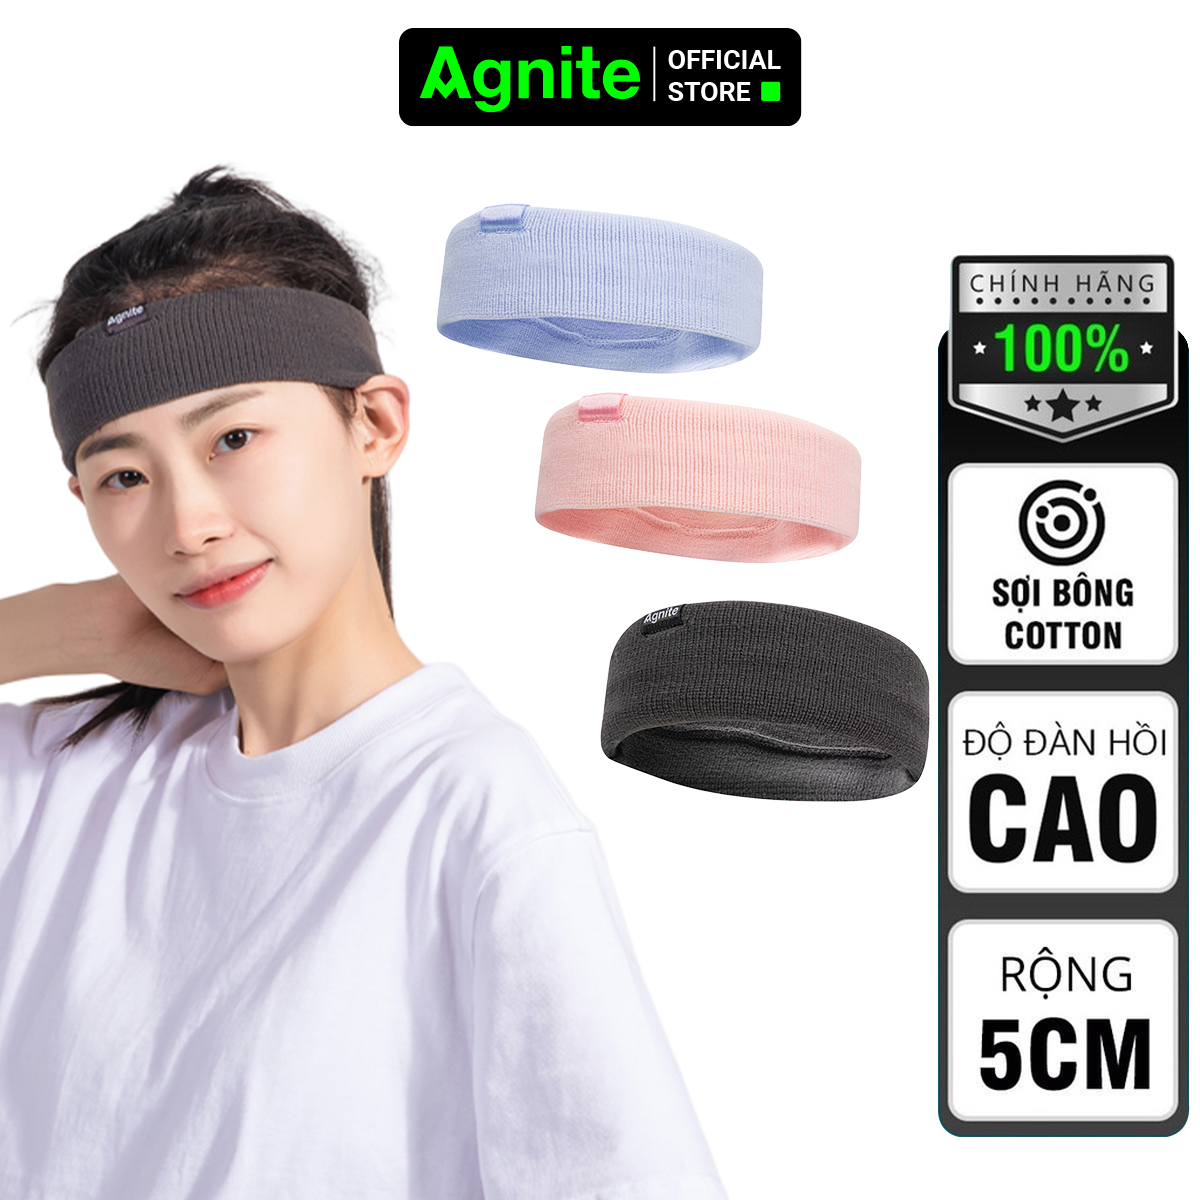 Băng đô thể thao AGNITE chính hãng, headband vải co giãn tập gym, bóng rổ, chạy bộ, bóng chuyền, cầu lông mã FL101